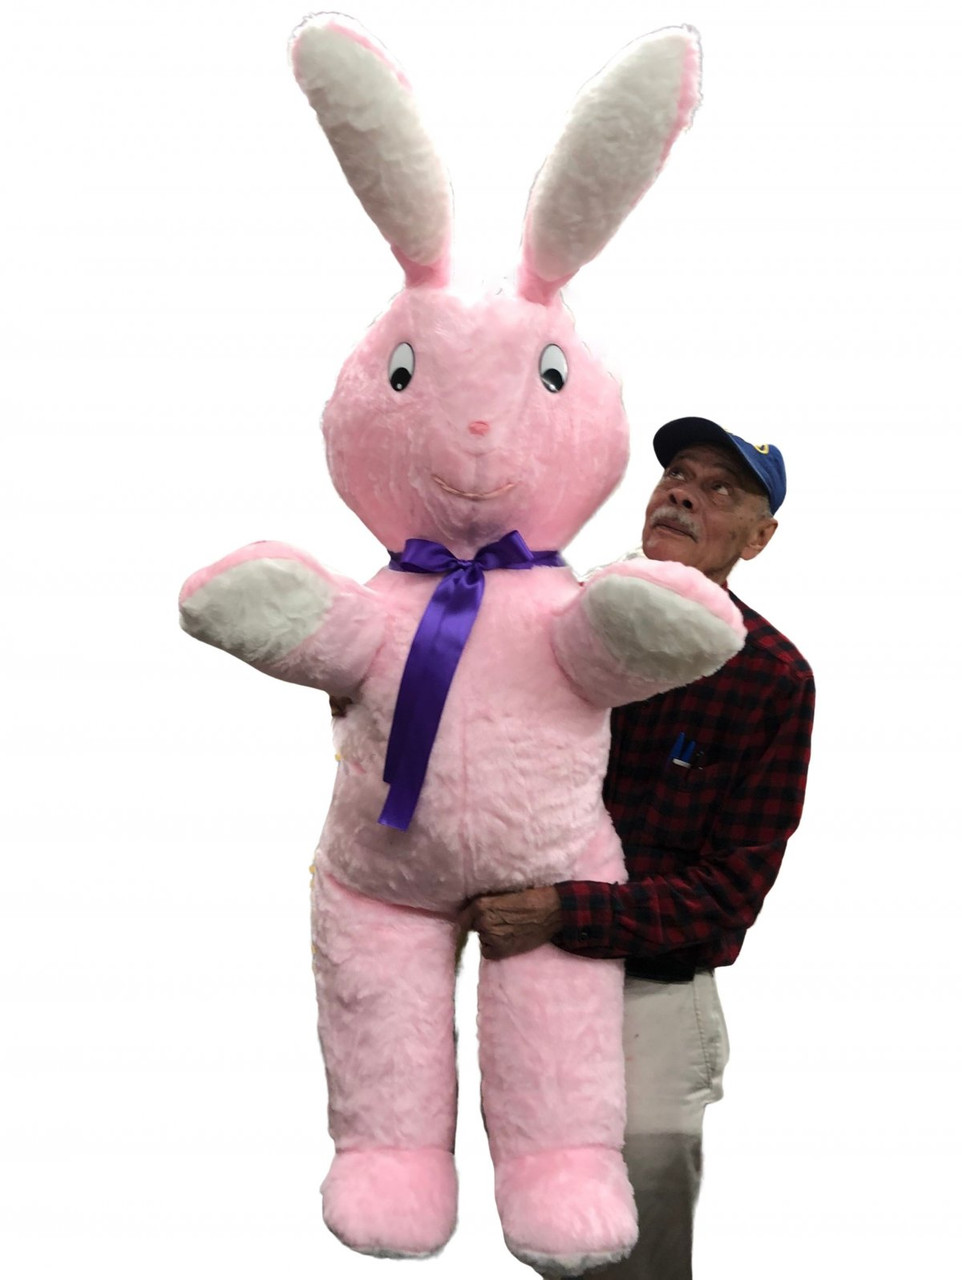 giant stuffed bunny rabbit